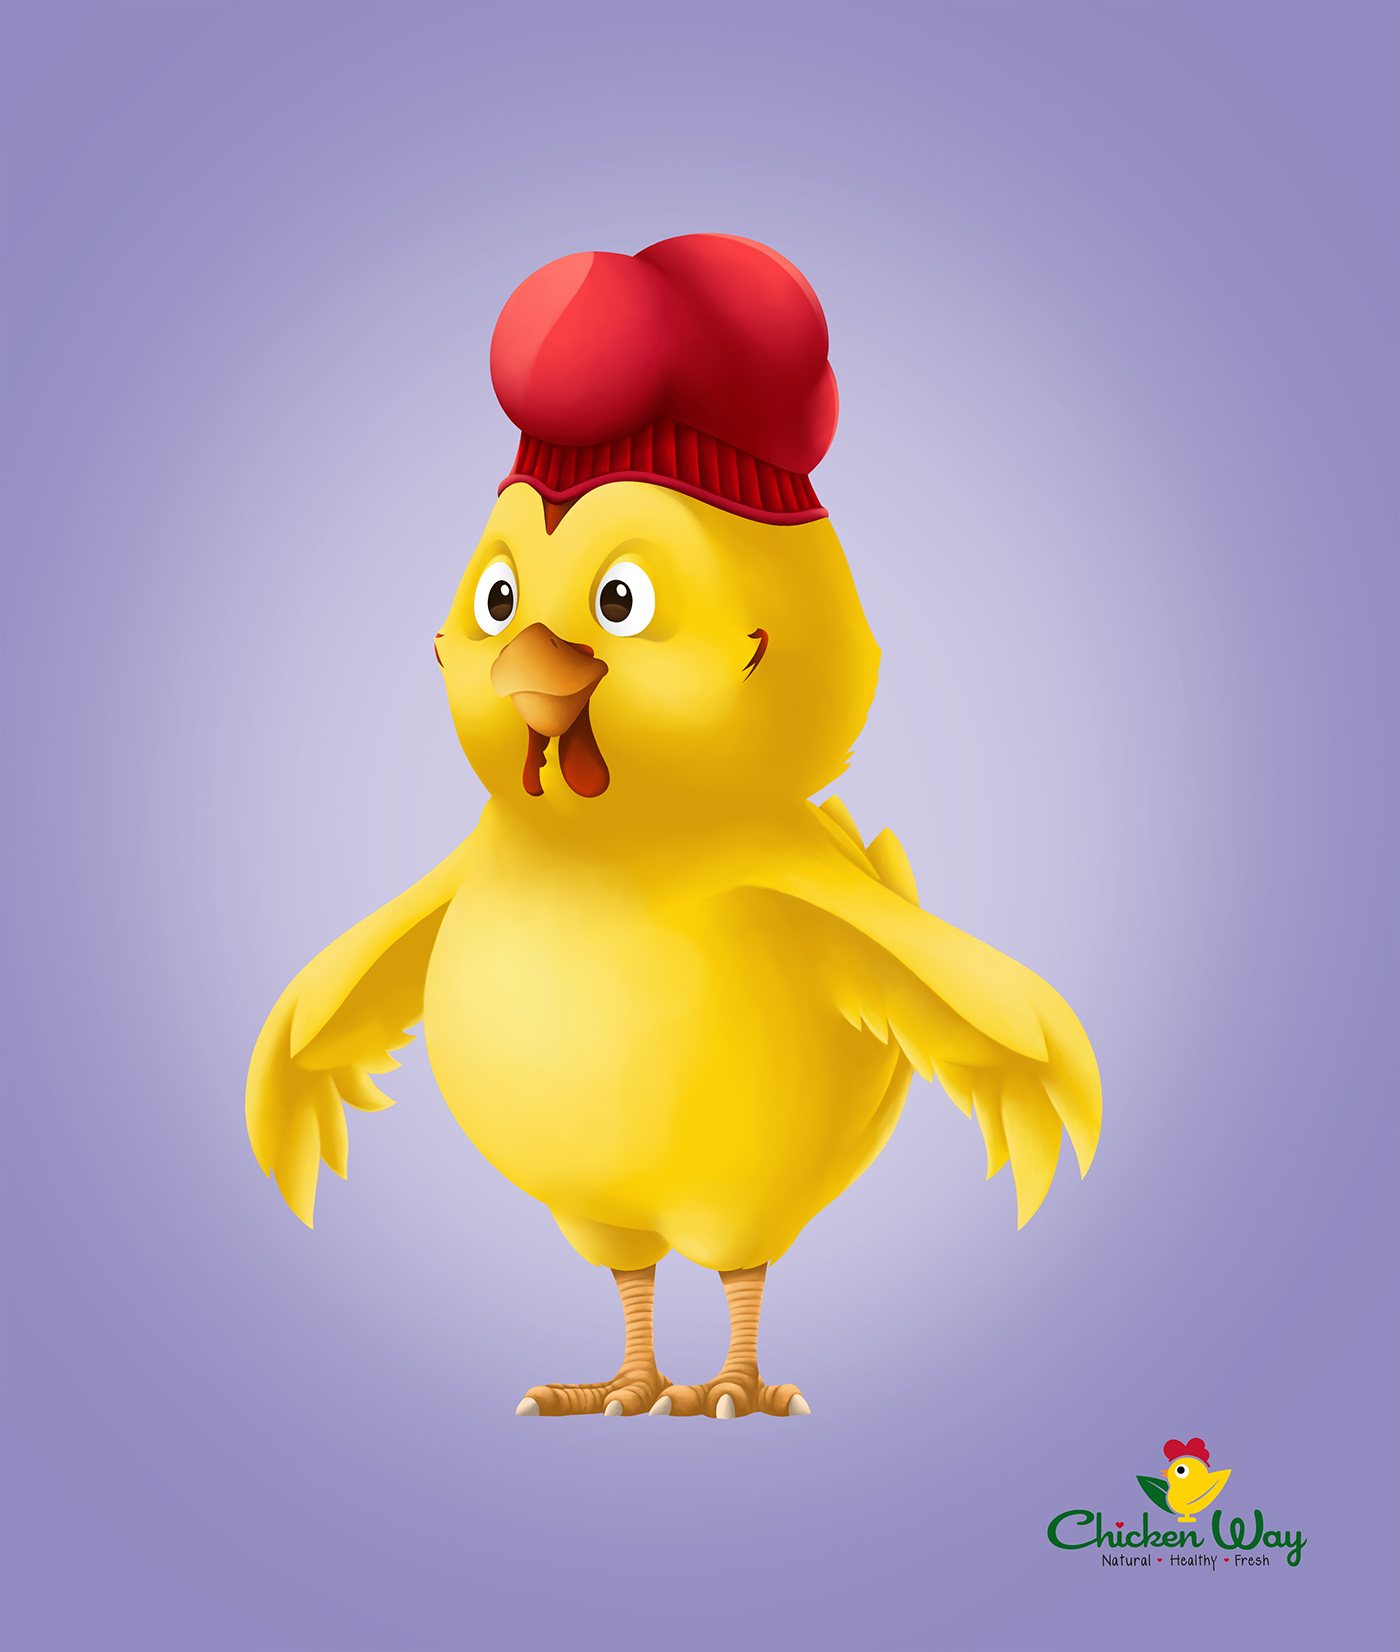 CW chicken  chicken wilson caceres pollo colombia diseño Mascota Character personaje amarillo animal brand logo united states